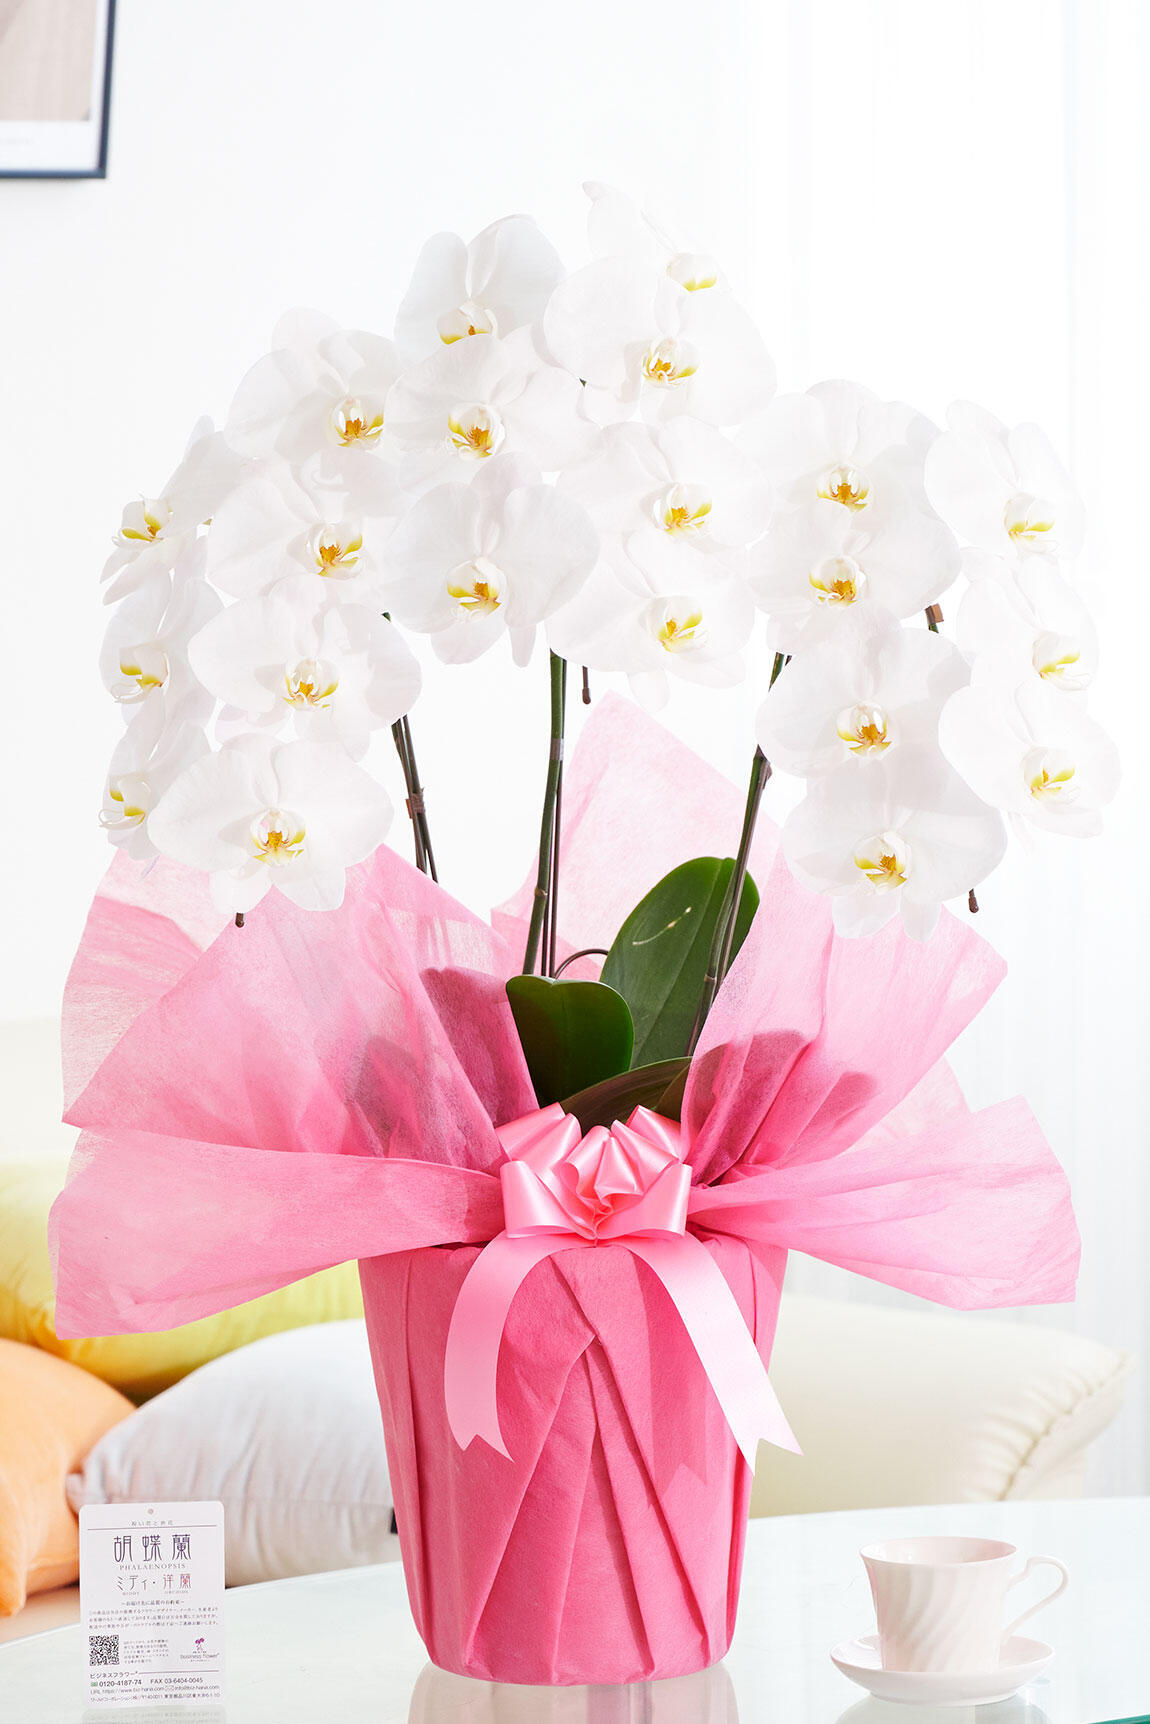 <p>お祝いの定番である白色の3本立ち大輪胡蝶蘭を、コストパフォーマンス重視の格安価格で提供いたします。</p>